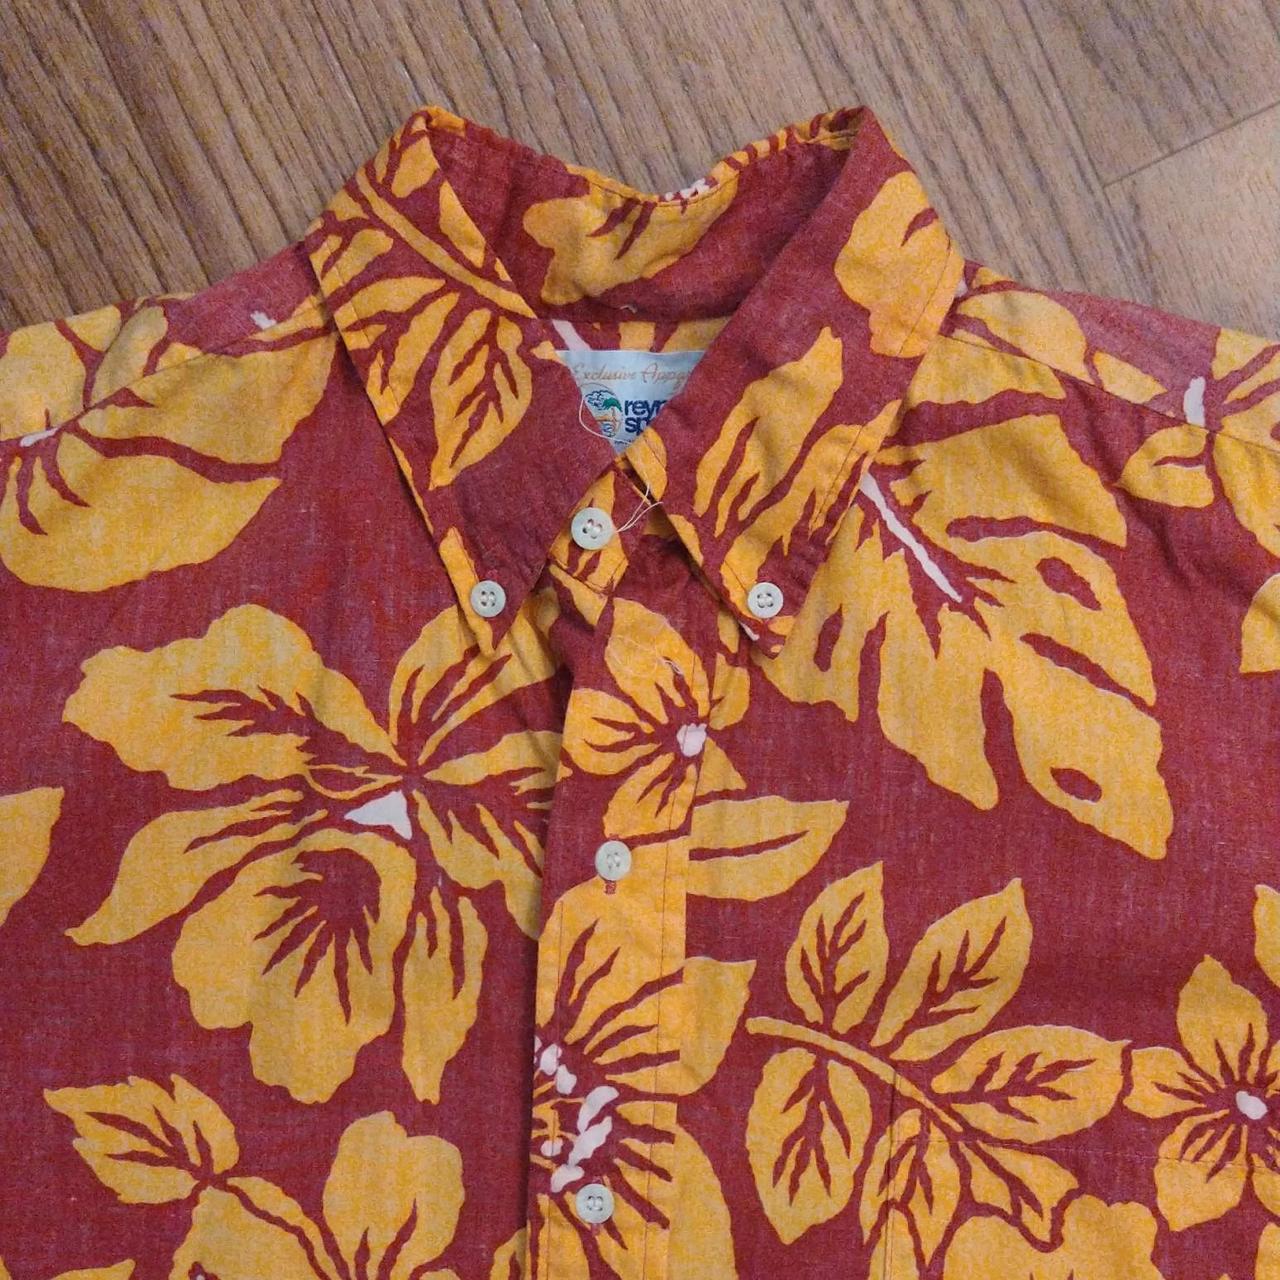 Vintage Reyn Spooner Hawaiian Shirt, Made in Hawaii, - Depop